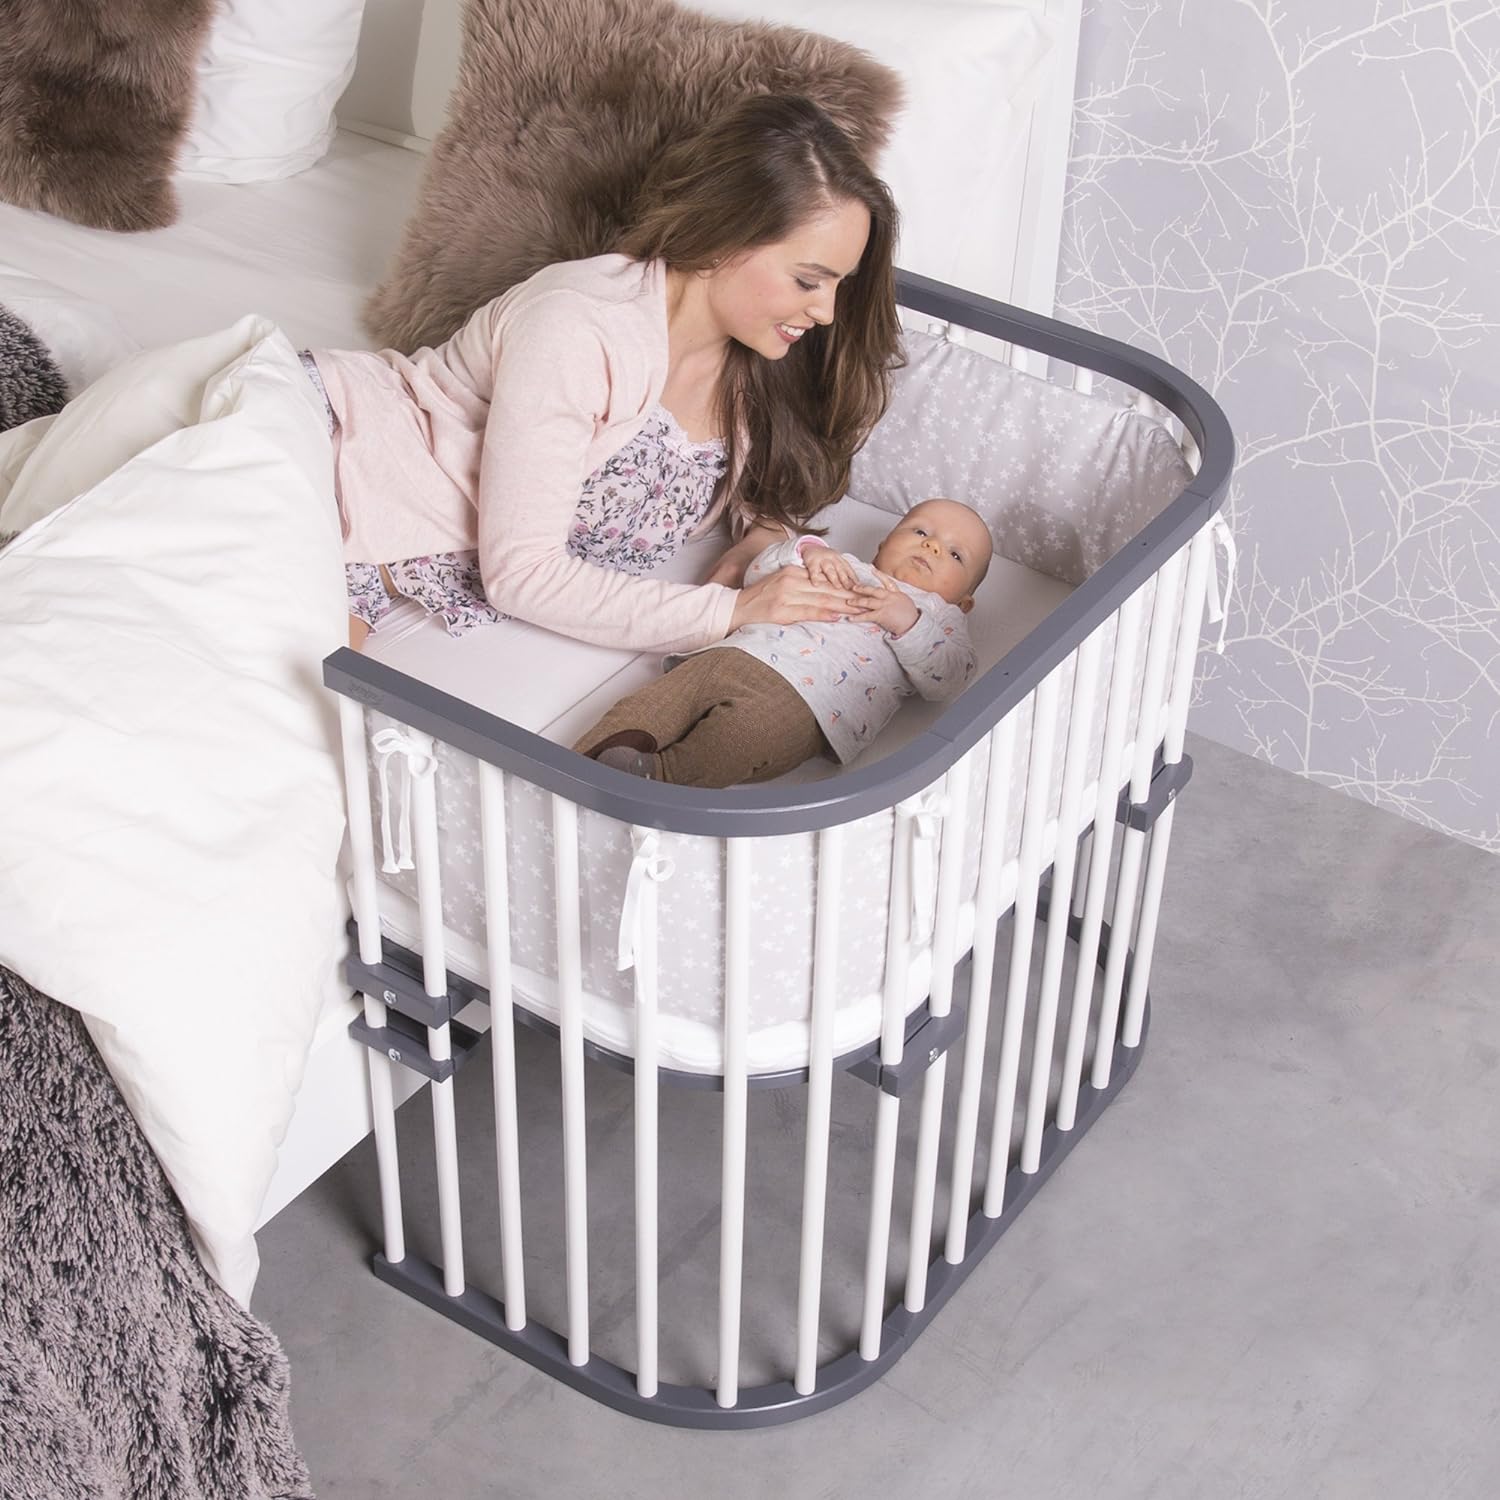 Люлька трансформер. Babybay Maxi. Кроватка babybay Original. Детская кровать babybay Tobi Original. Кроватка Happy Baby Mommy Lux.